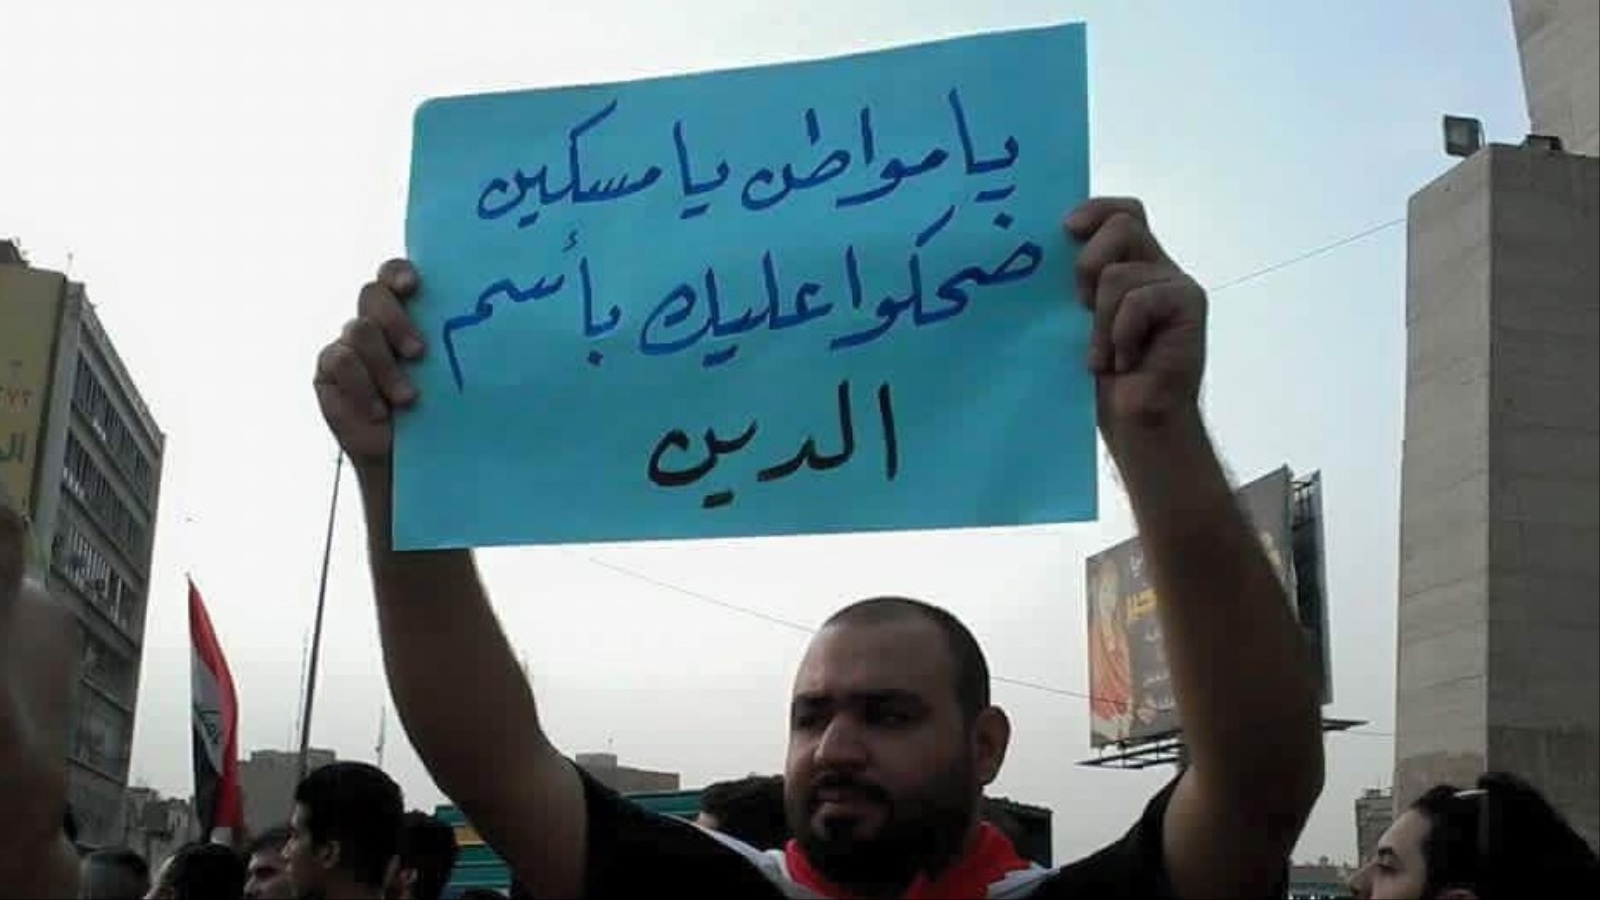 المتظاهرون رفعوا شعارات لا تتعلق بحزب أو دين أو مذهب (الجزيرة)